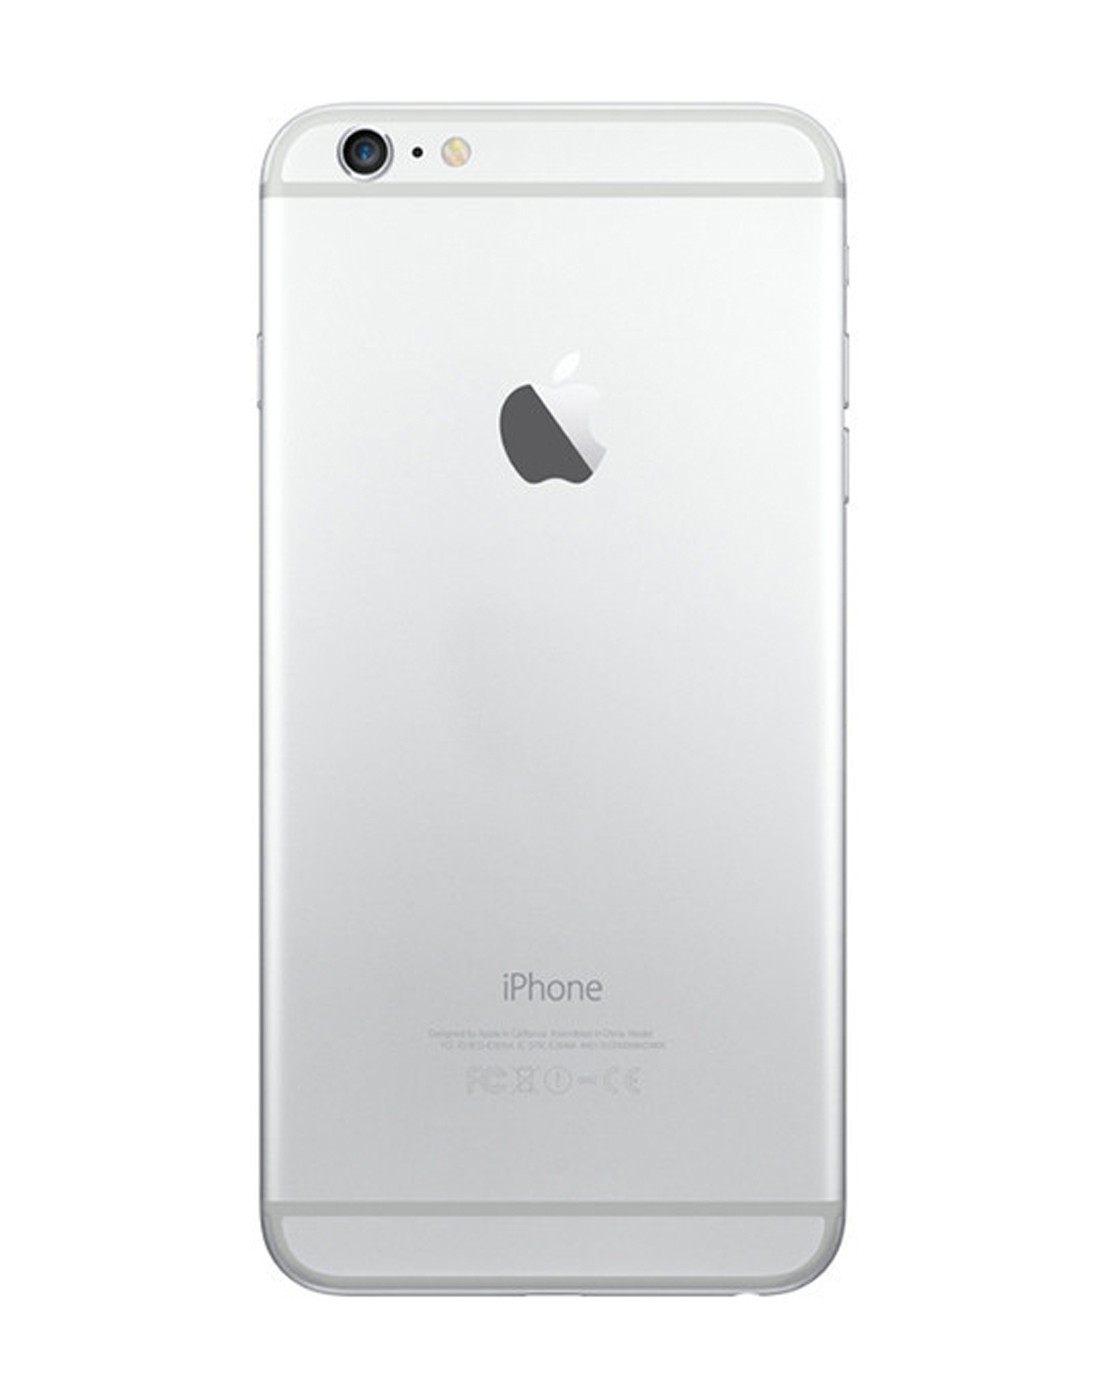 苹果iphone 6 16g移动联通 银白色iphone 6 mg482ch/a